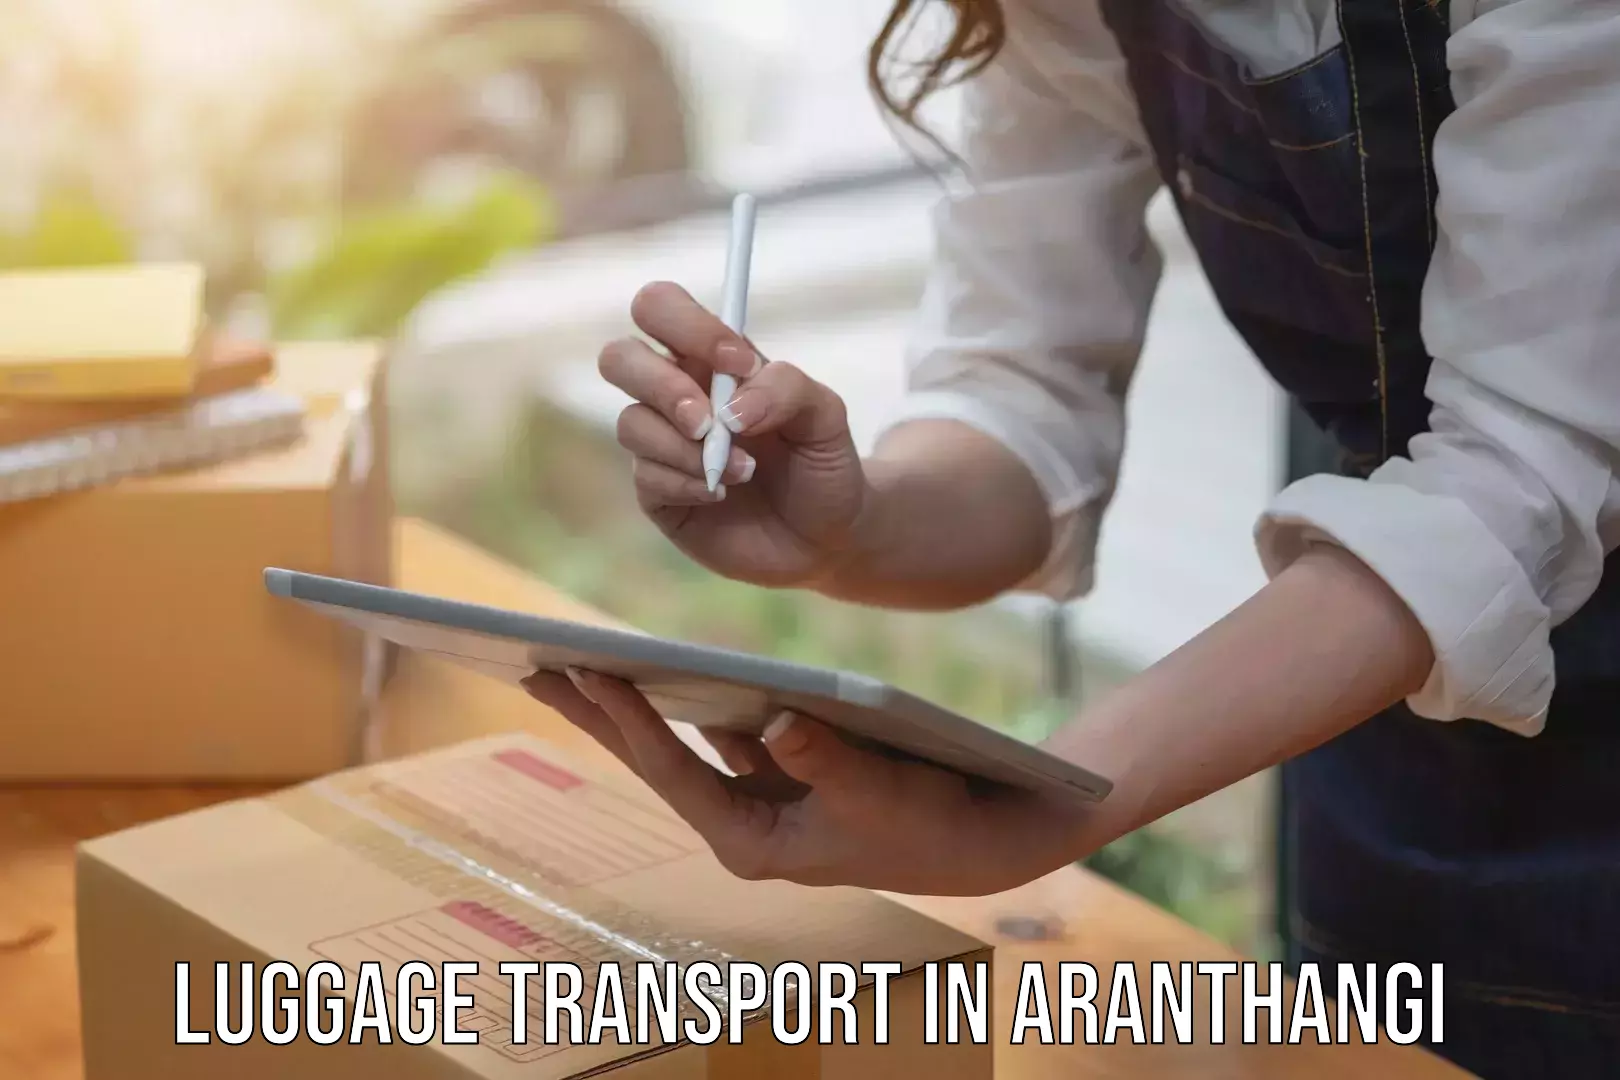 Luggage shipping estimate in Aranthangi